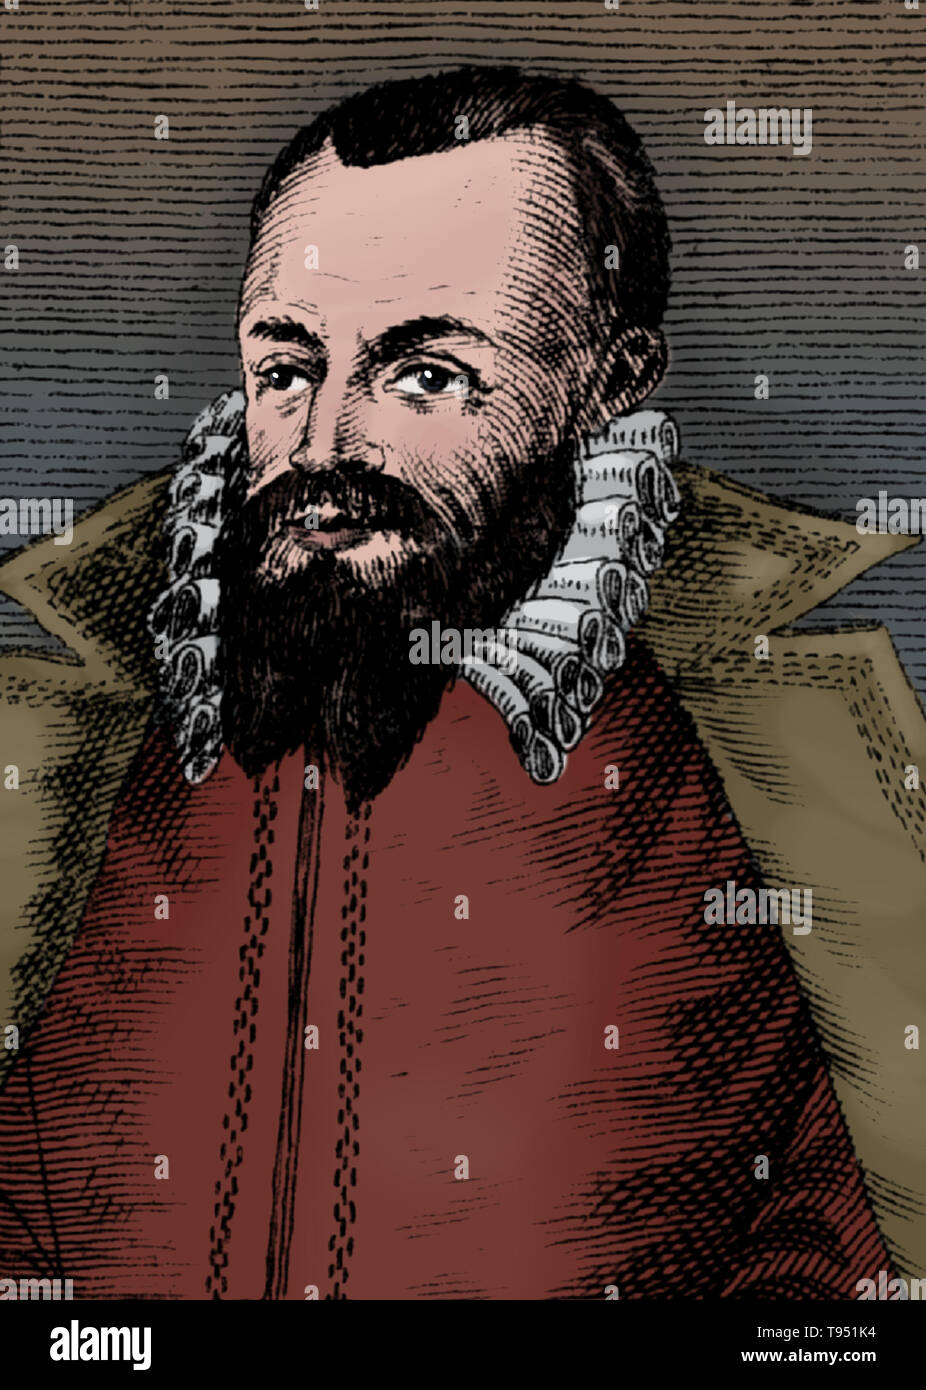 Michael Maestlin (30 settembre 1550 - 20 ottobre 1631) era un tedesco astronomo e matematico. Ha studiato teologia, matematica e astronomia e astrologia e graduato come Magister in 1571. Nel 1576 divenne diacono luterano. Nel 1580 divenne professore di matematica prima presso l'Università di Heidelberg, poi all'Università di Tubinga erano ha insegnato per 47 anni. Tra i suoi studenti fu Johannes Kepler. Foto Stock